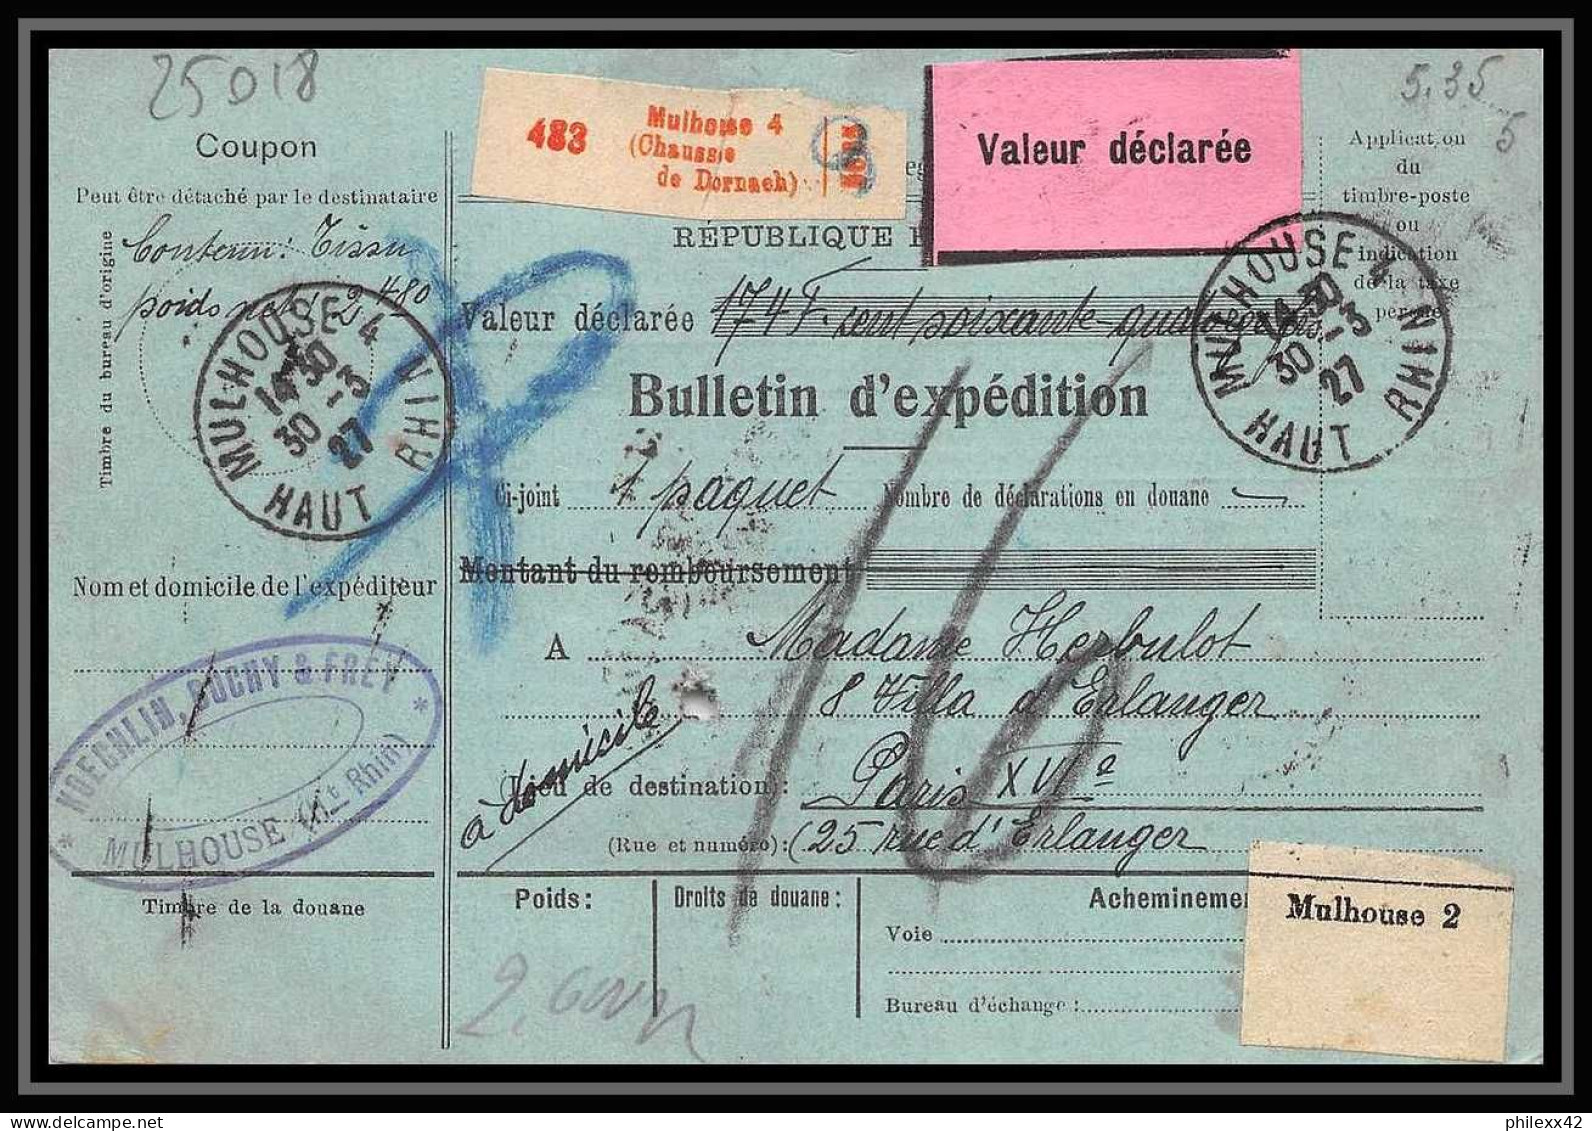 25018 Bulletin D'expédition France Colis Postaux Fiscal Haut Rhin 1927 Guebwiller Semeuse Merson 123 Valeur Déclarée - Briefe U. Dokumente